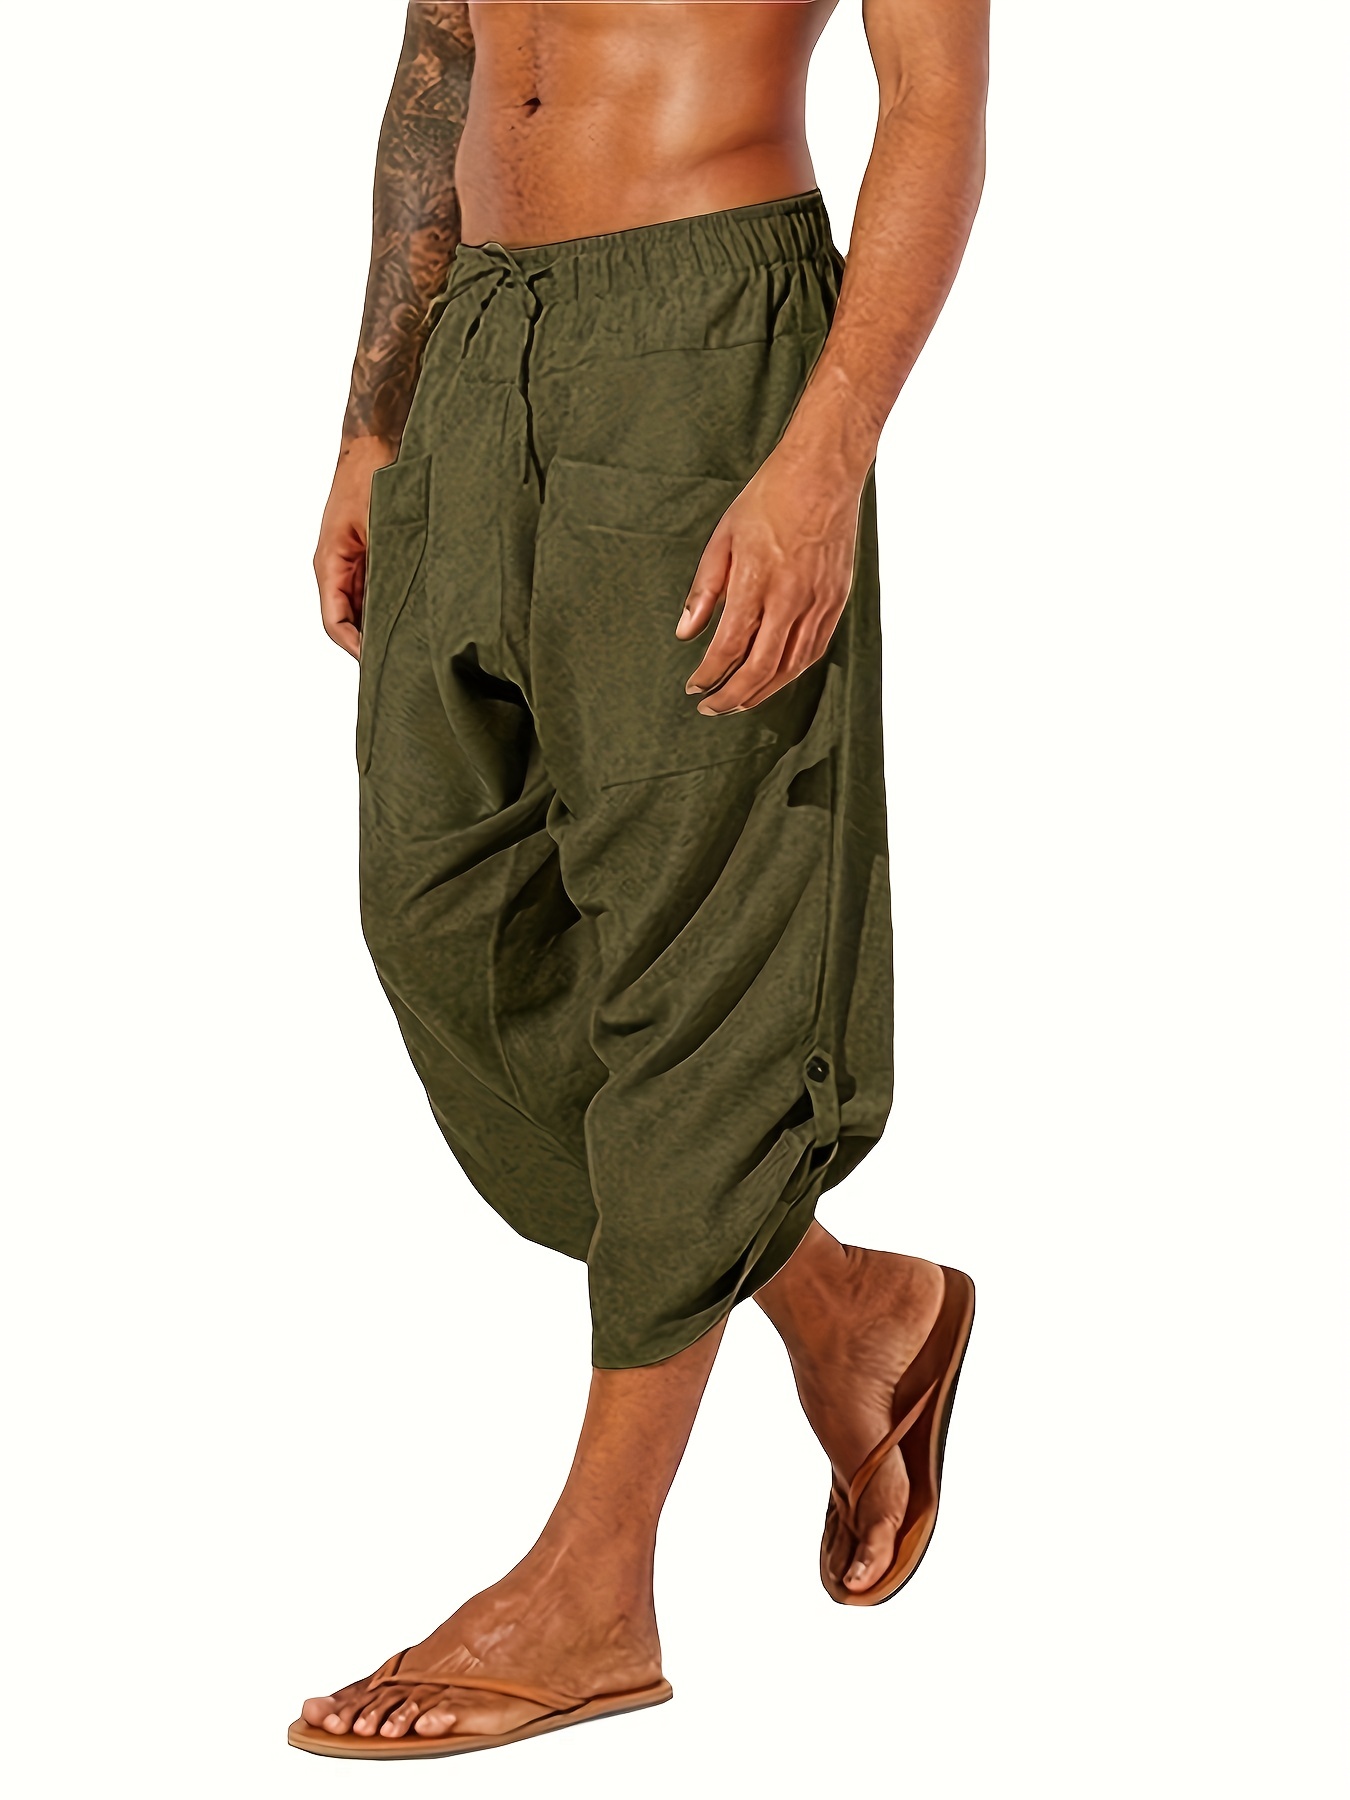 Plus Size Men's Fashion Solid Color Pants Drawstring Casual Harem Trouser  Hot Loose Wide Leg Pants Trousers